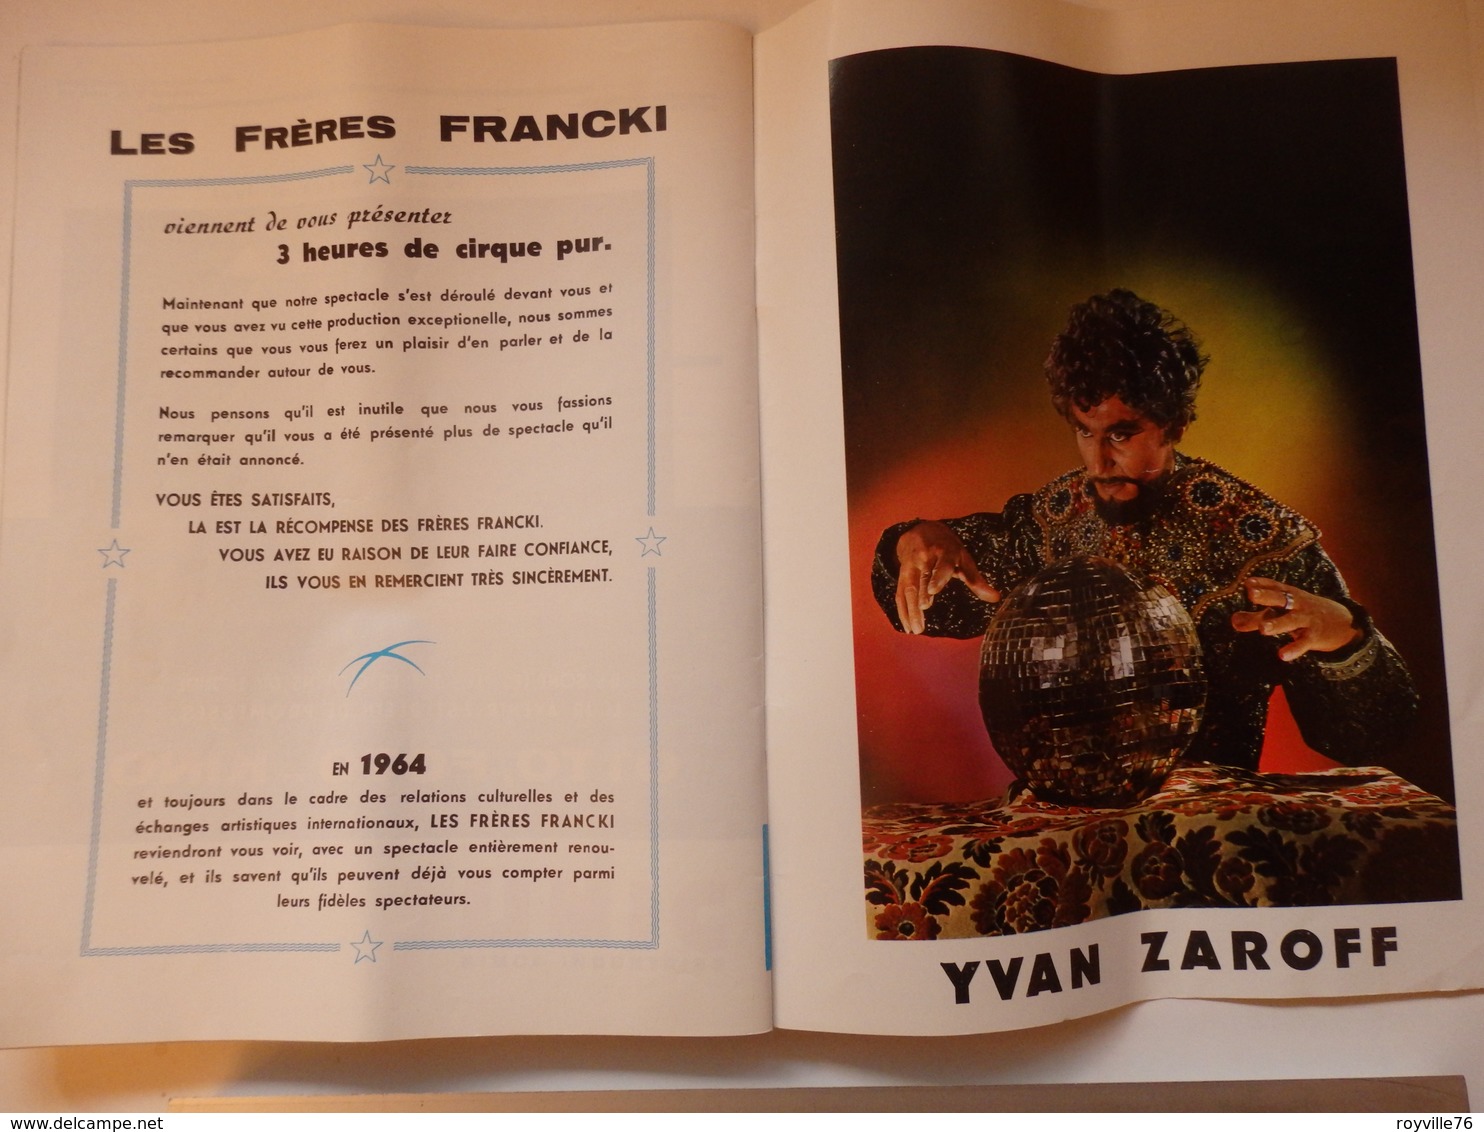 Programme du Cirque Francki de 1963. Présentation du Cirque Officiel de Hongrie et du célèbre orchestre Tzigane.